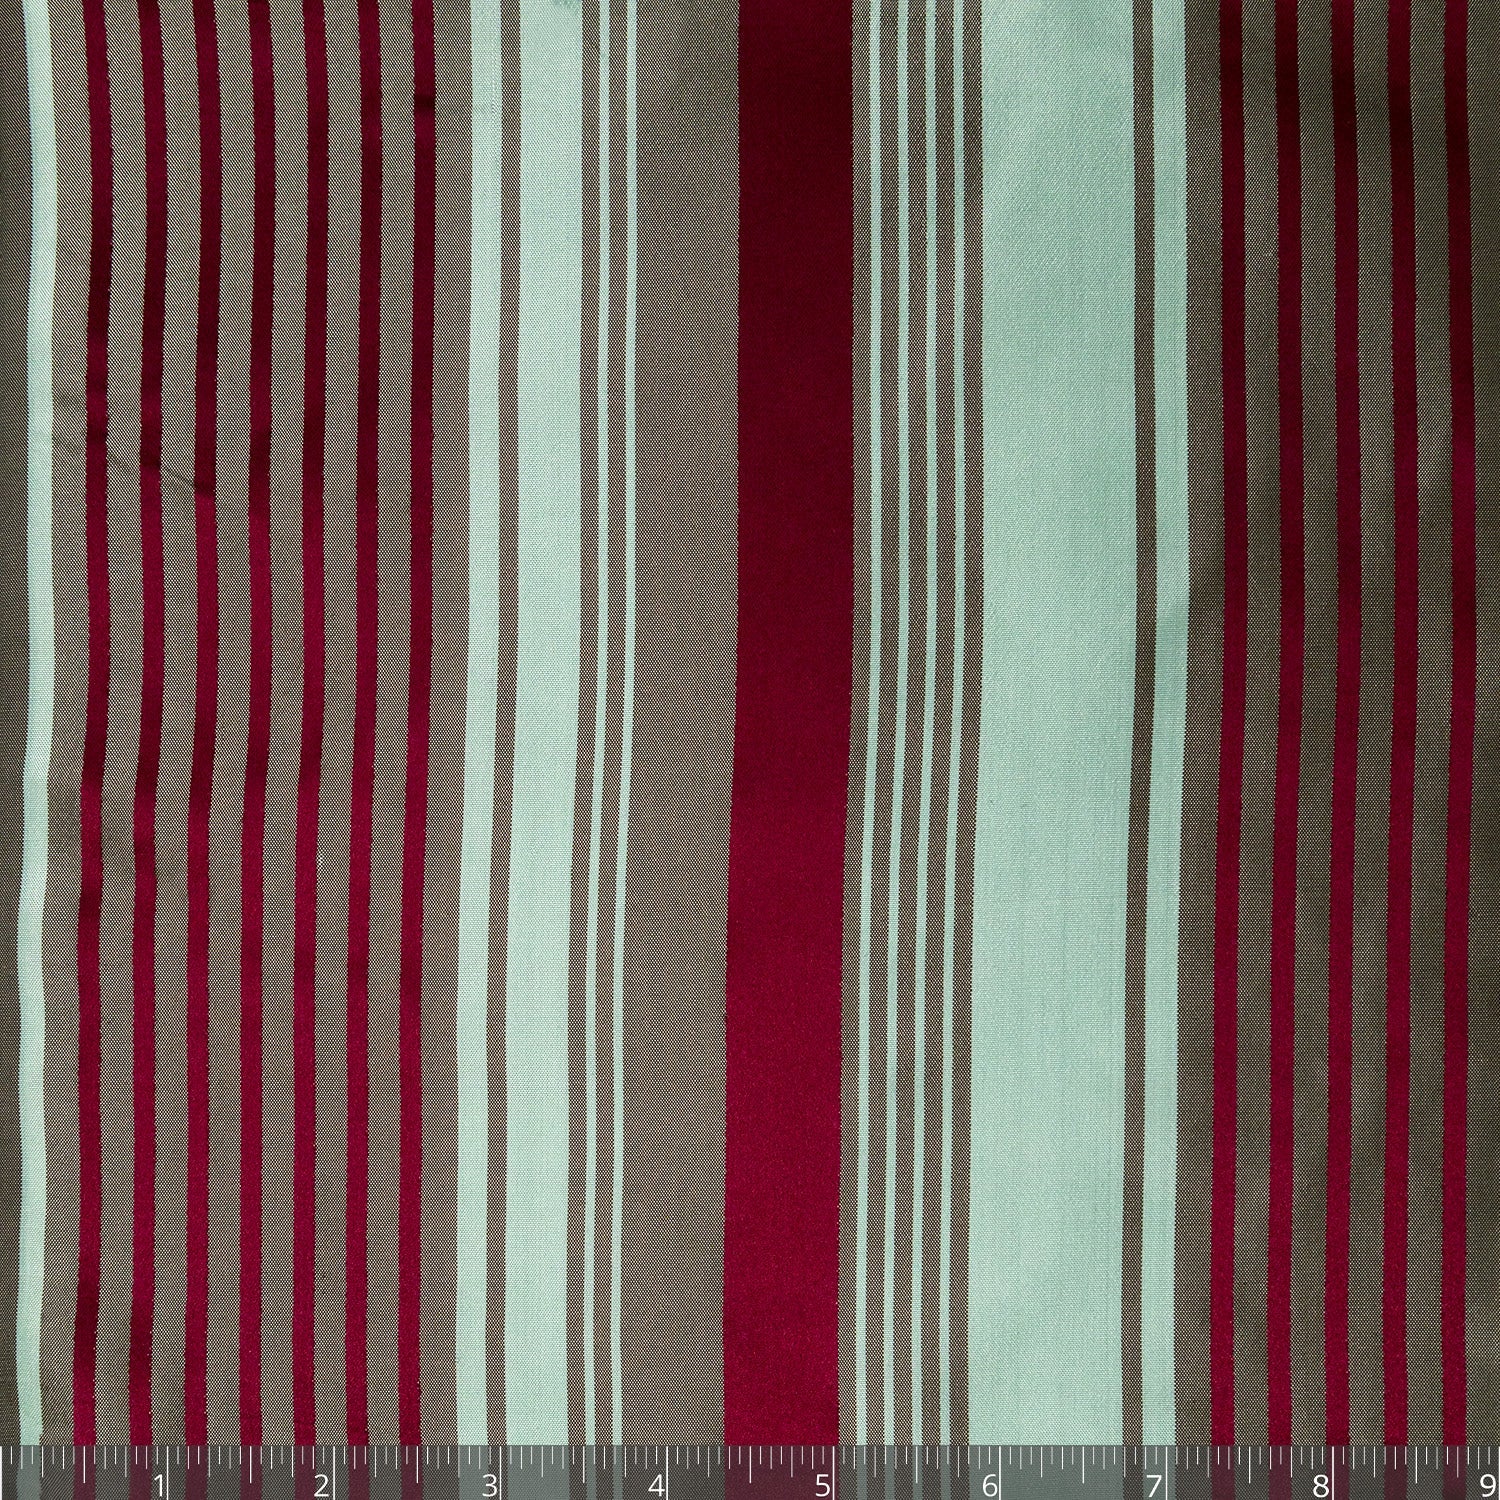 Dark Red, Light Saxon Green & Warm Grey Striped Silk Taffeta - $25.00 yd. - Burnley & Trowbridge Co.